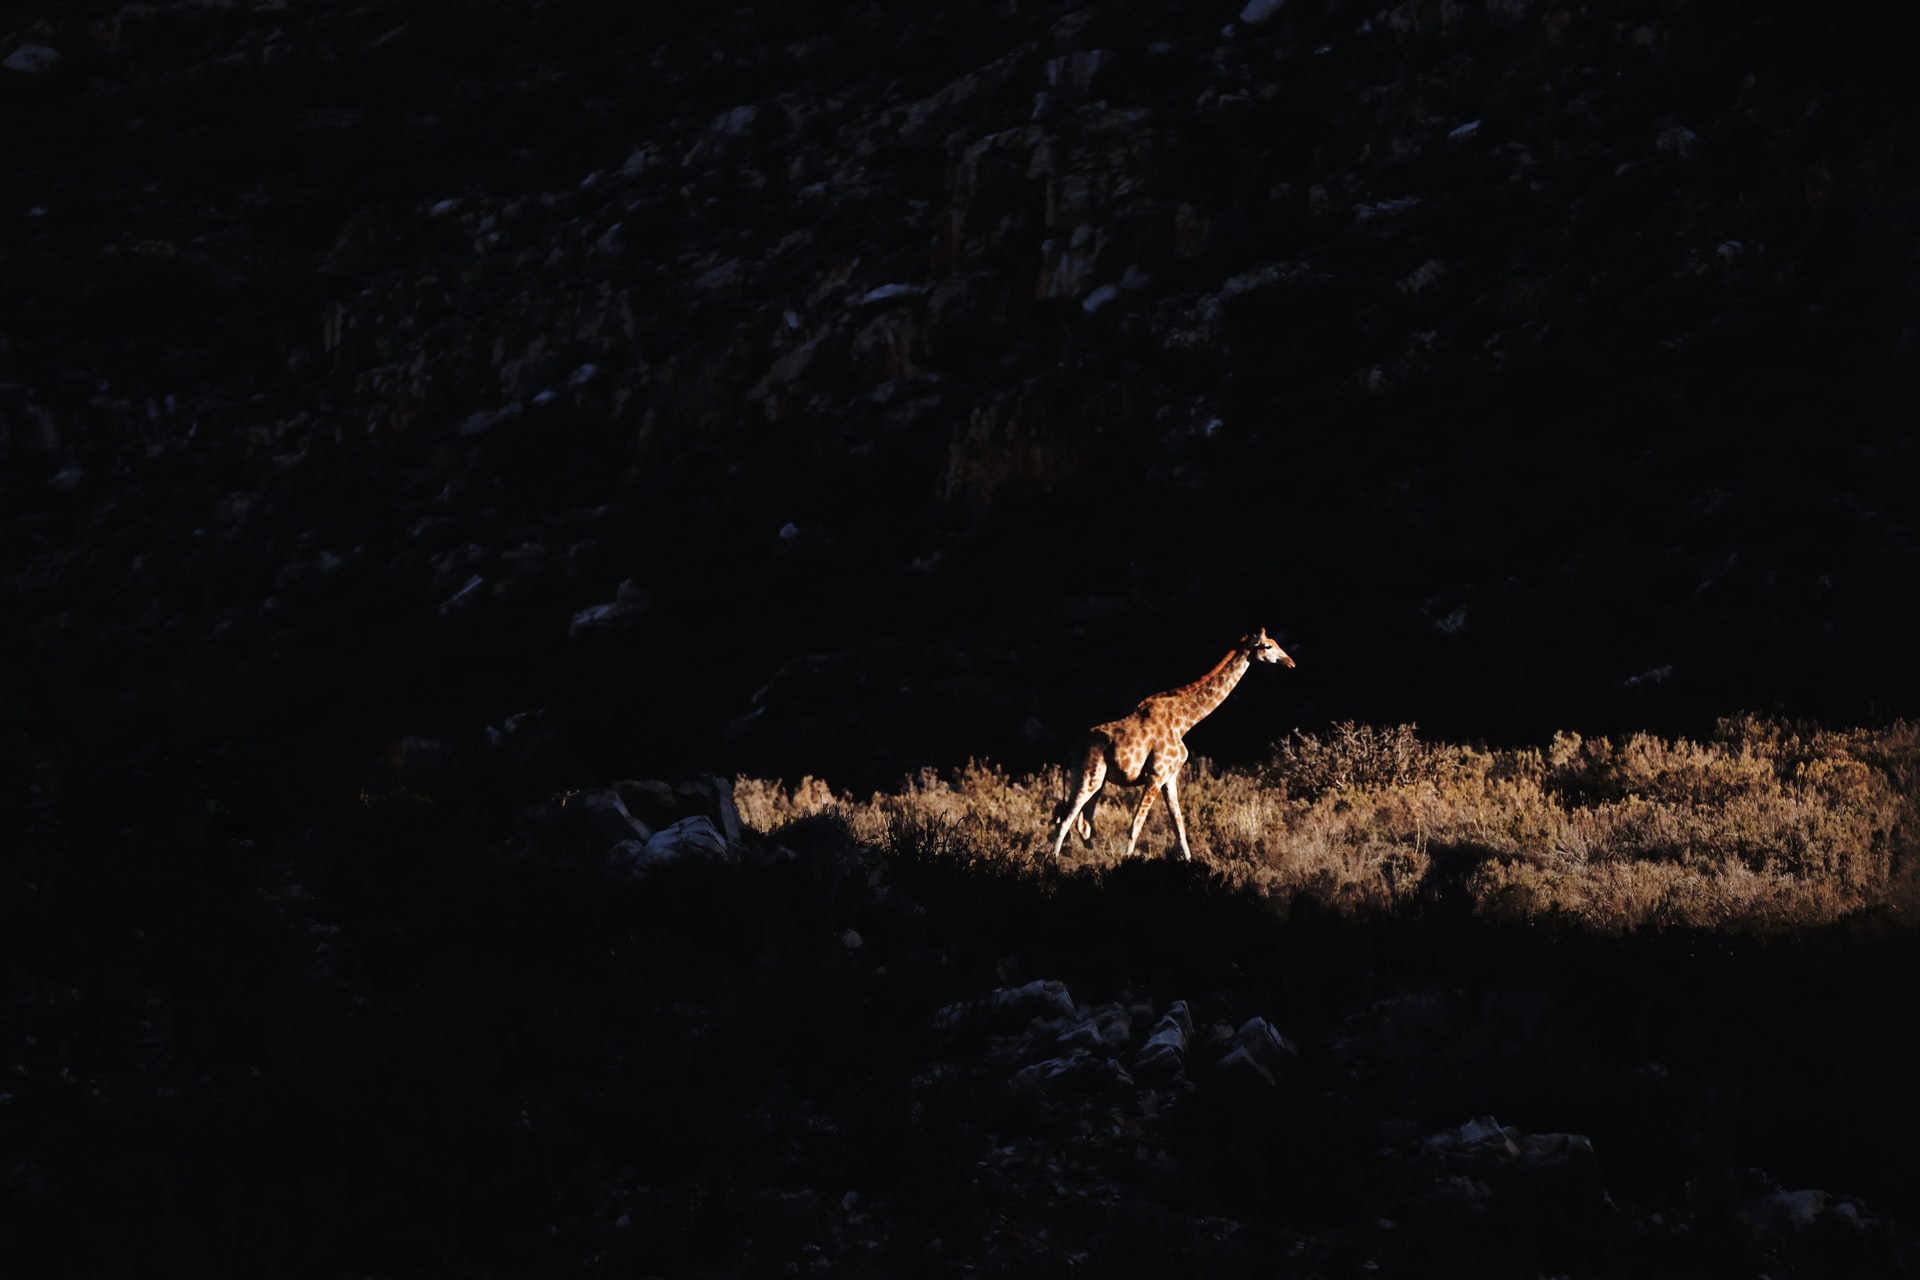 lone giraffe in South Africa